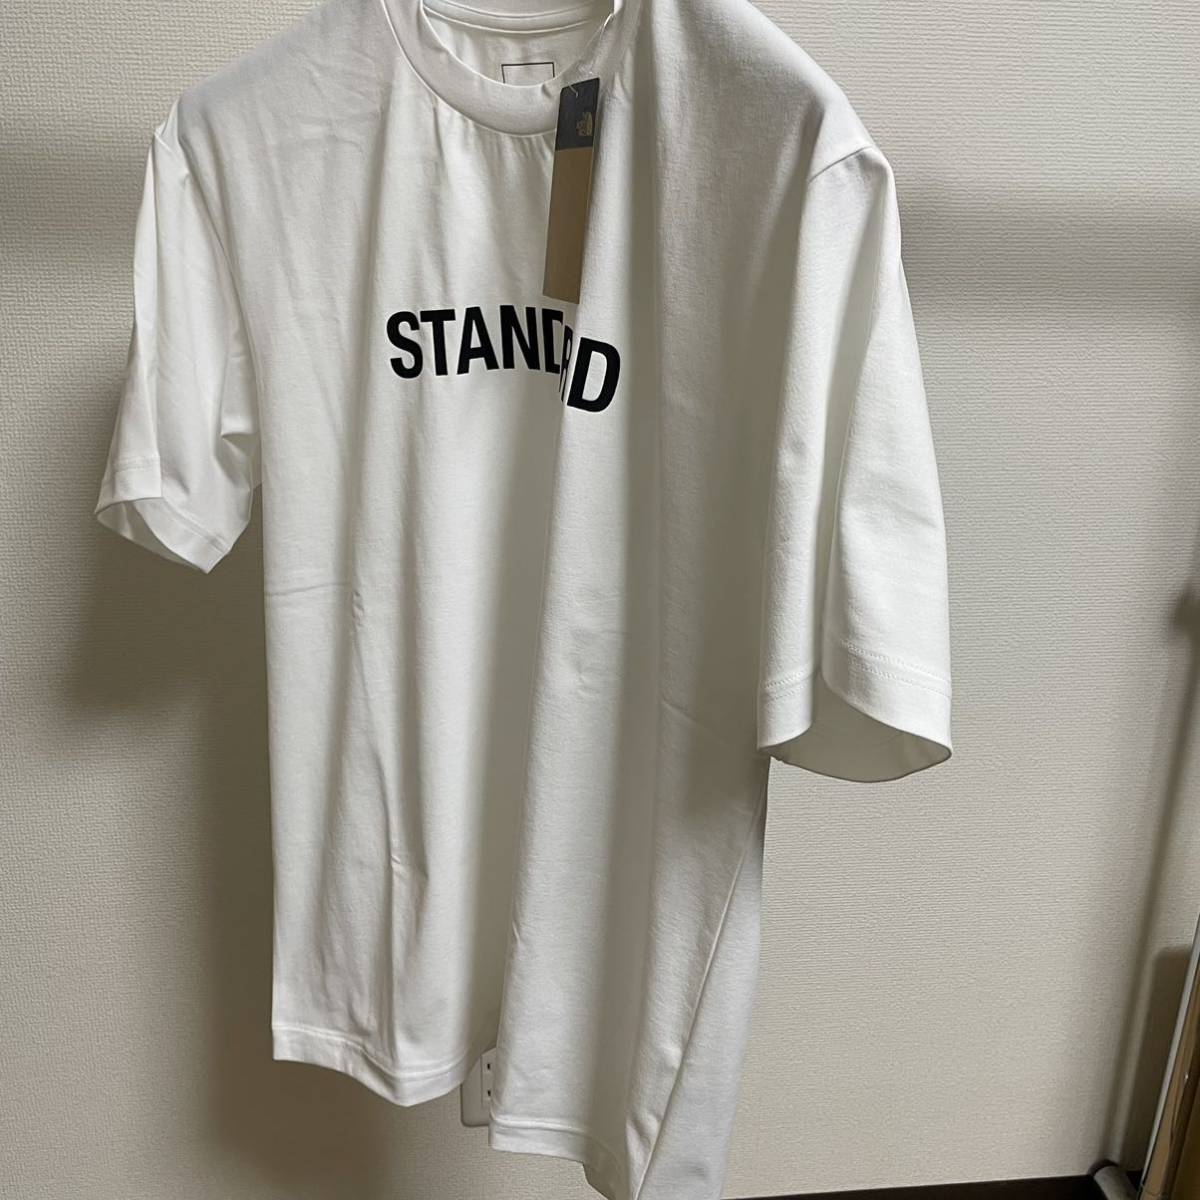 ノースフェイス スタンダード限定 Tシャツ【Mサイズ】S/S STANDARD